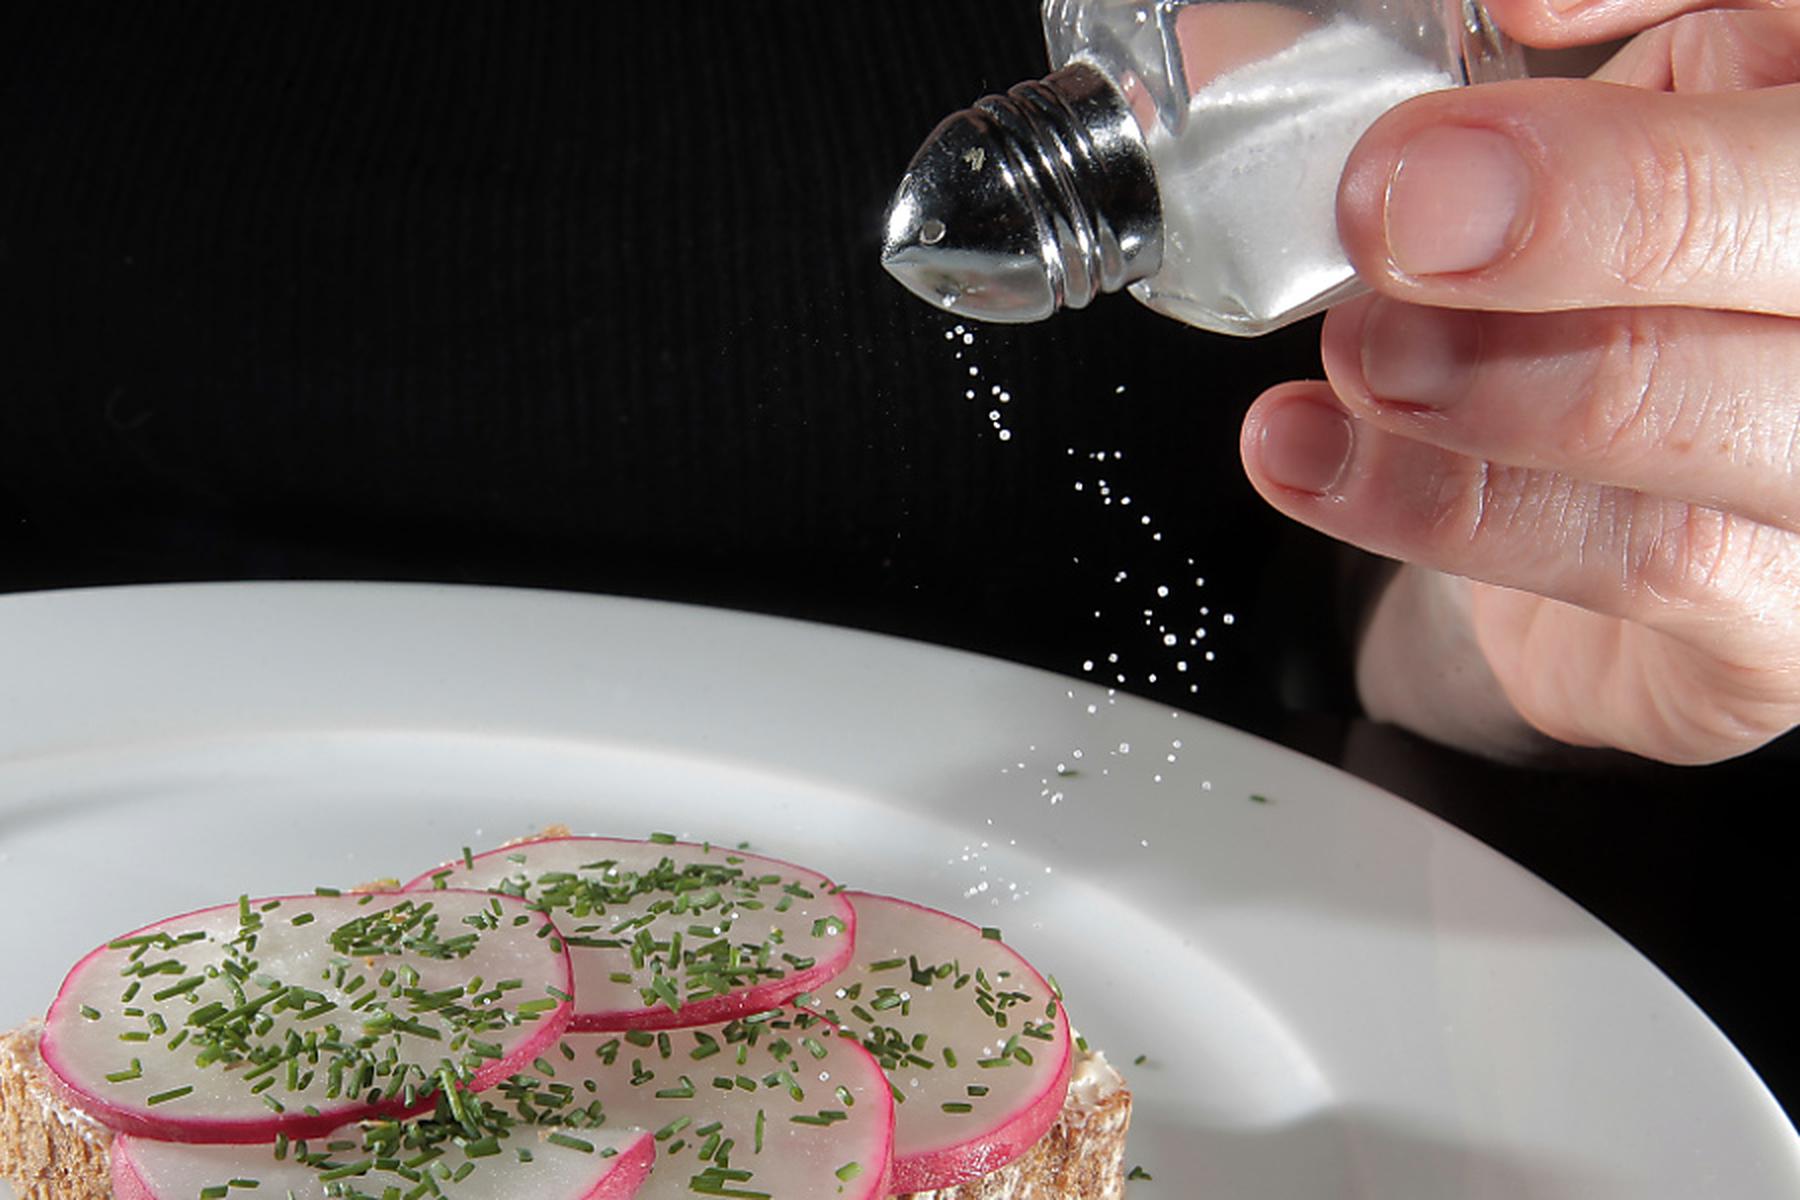 Kopenhagen: Weniger Salz im Essen könnte viele Menschenleben retten